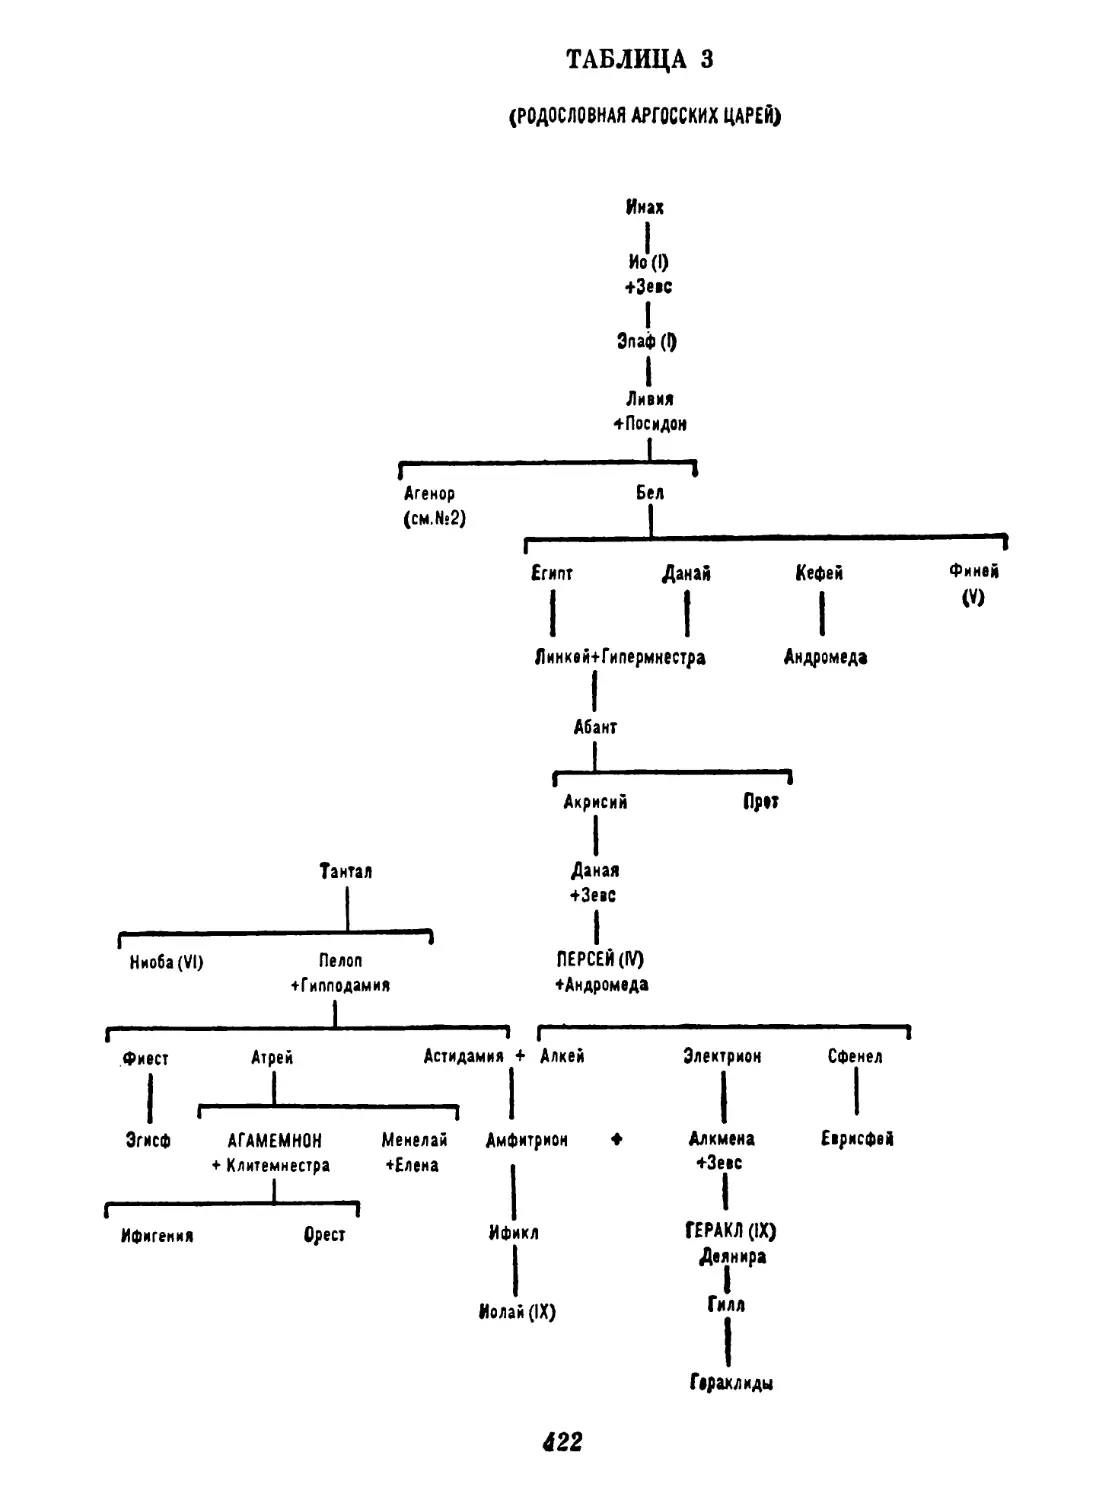 Таблица 4. Родословная минийских царей и эолидов